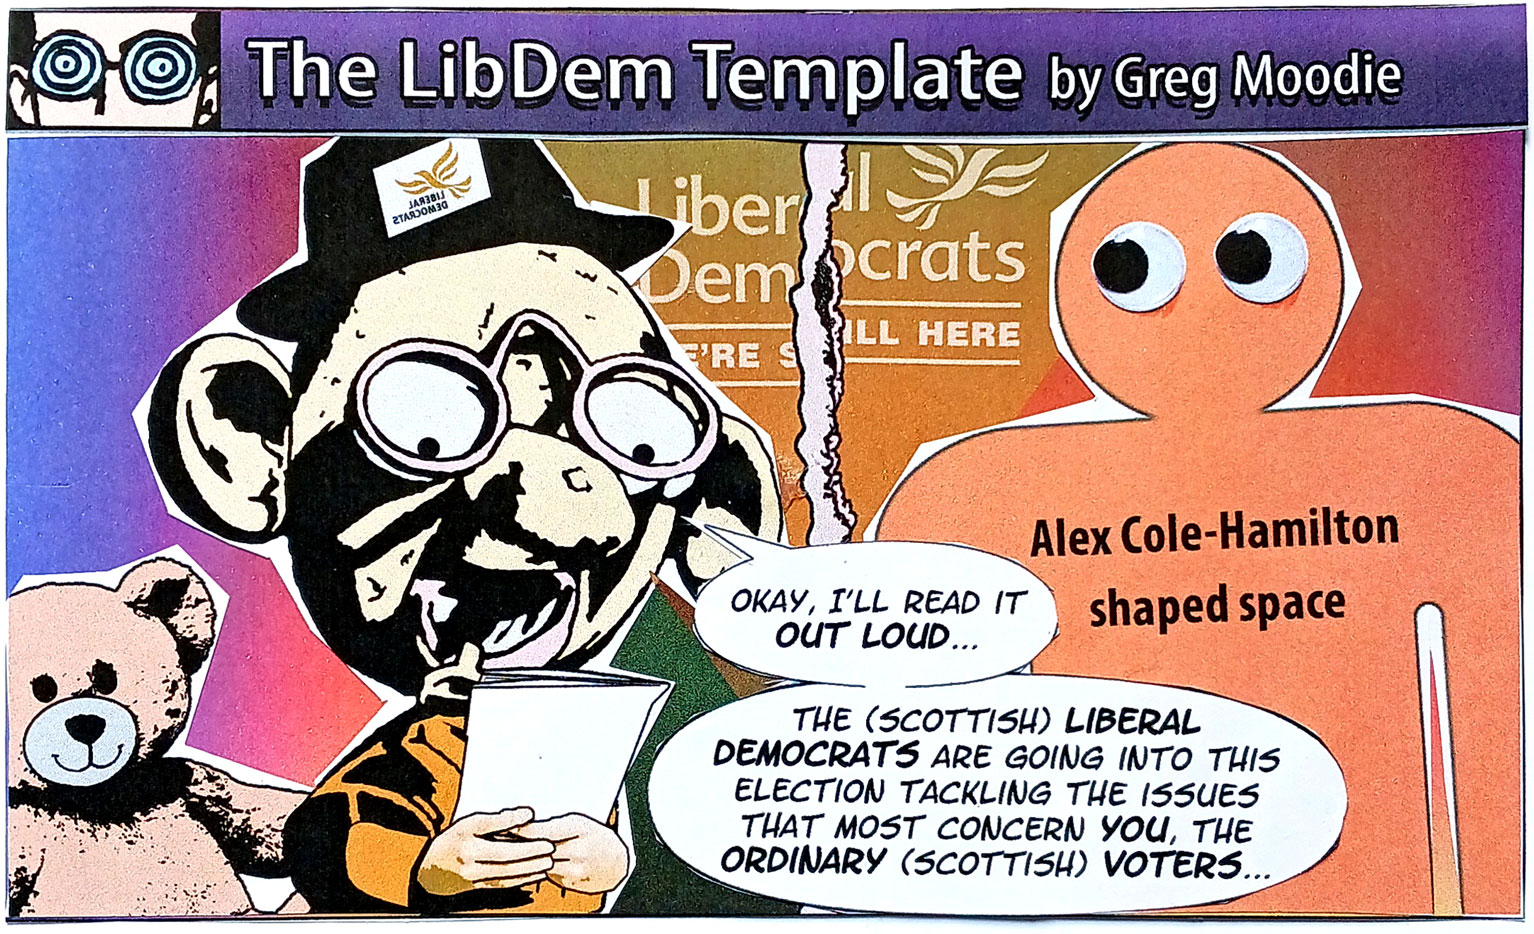 The LibDem Template